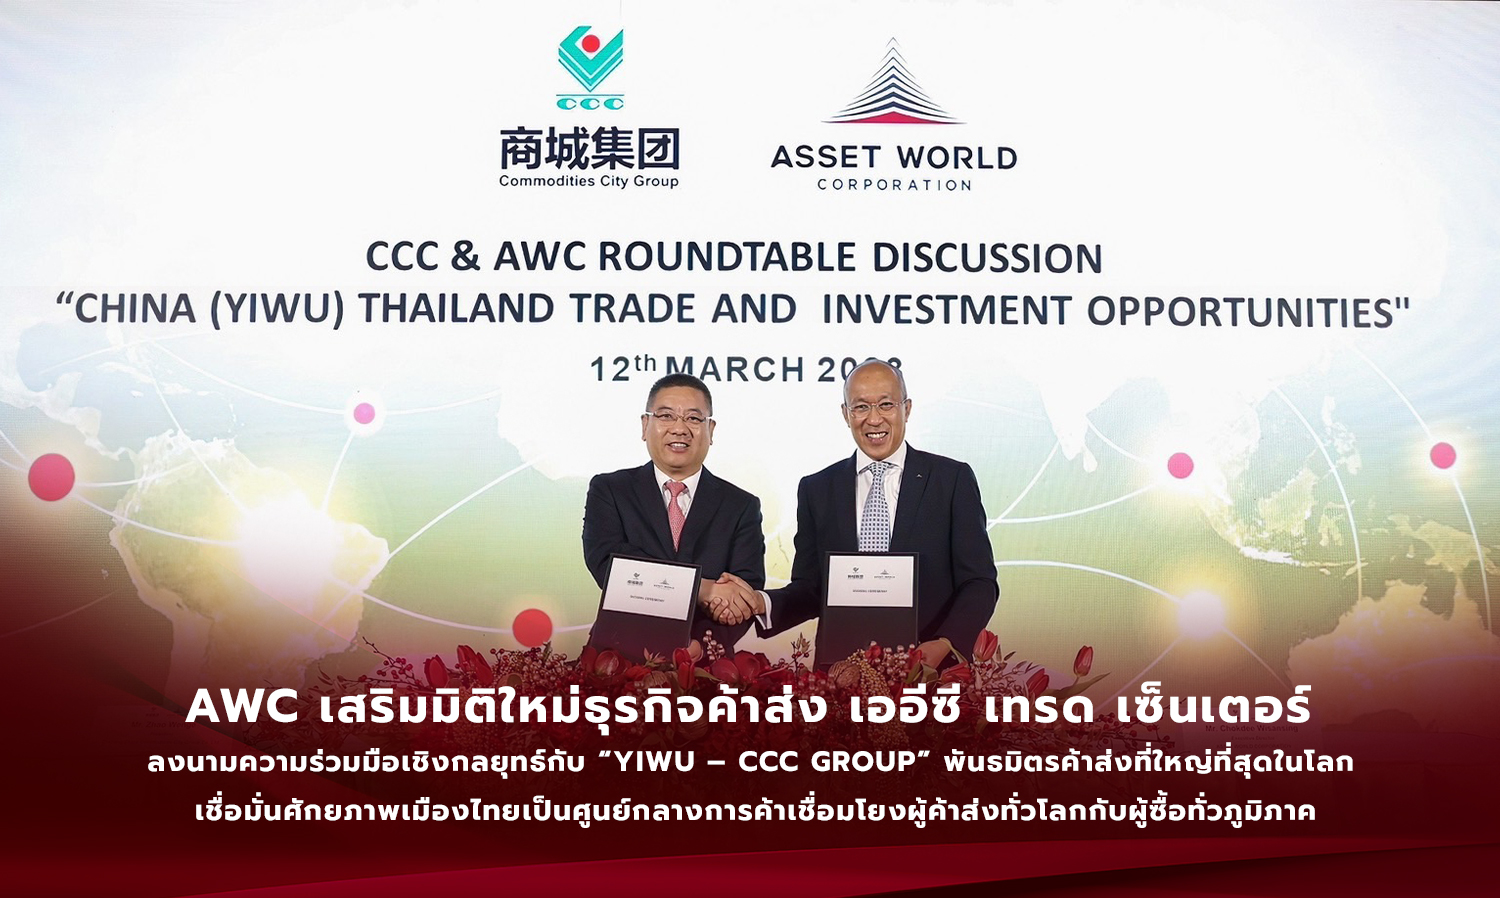 AWC เสริมมิติใหม่ธุรกิจค้าส่ง เออีซี เทรด เซ็นเตอร์  ลงนามความร่วมมือเชิงกลยุทธ์กับ “Yiwu – CCC Group” พันธมิตรค้าส่งที่ใหญ่ที่สุดในโลก  เชื่อมั่นศักยภาพเมืองไทยเป็นศูนย์กลางการค้าเชื่อมโยงผู้ค้าส่งทั่วโลกกับผู้ซื้อทั่วภูมิภาค